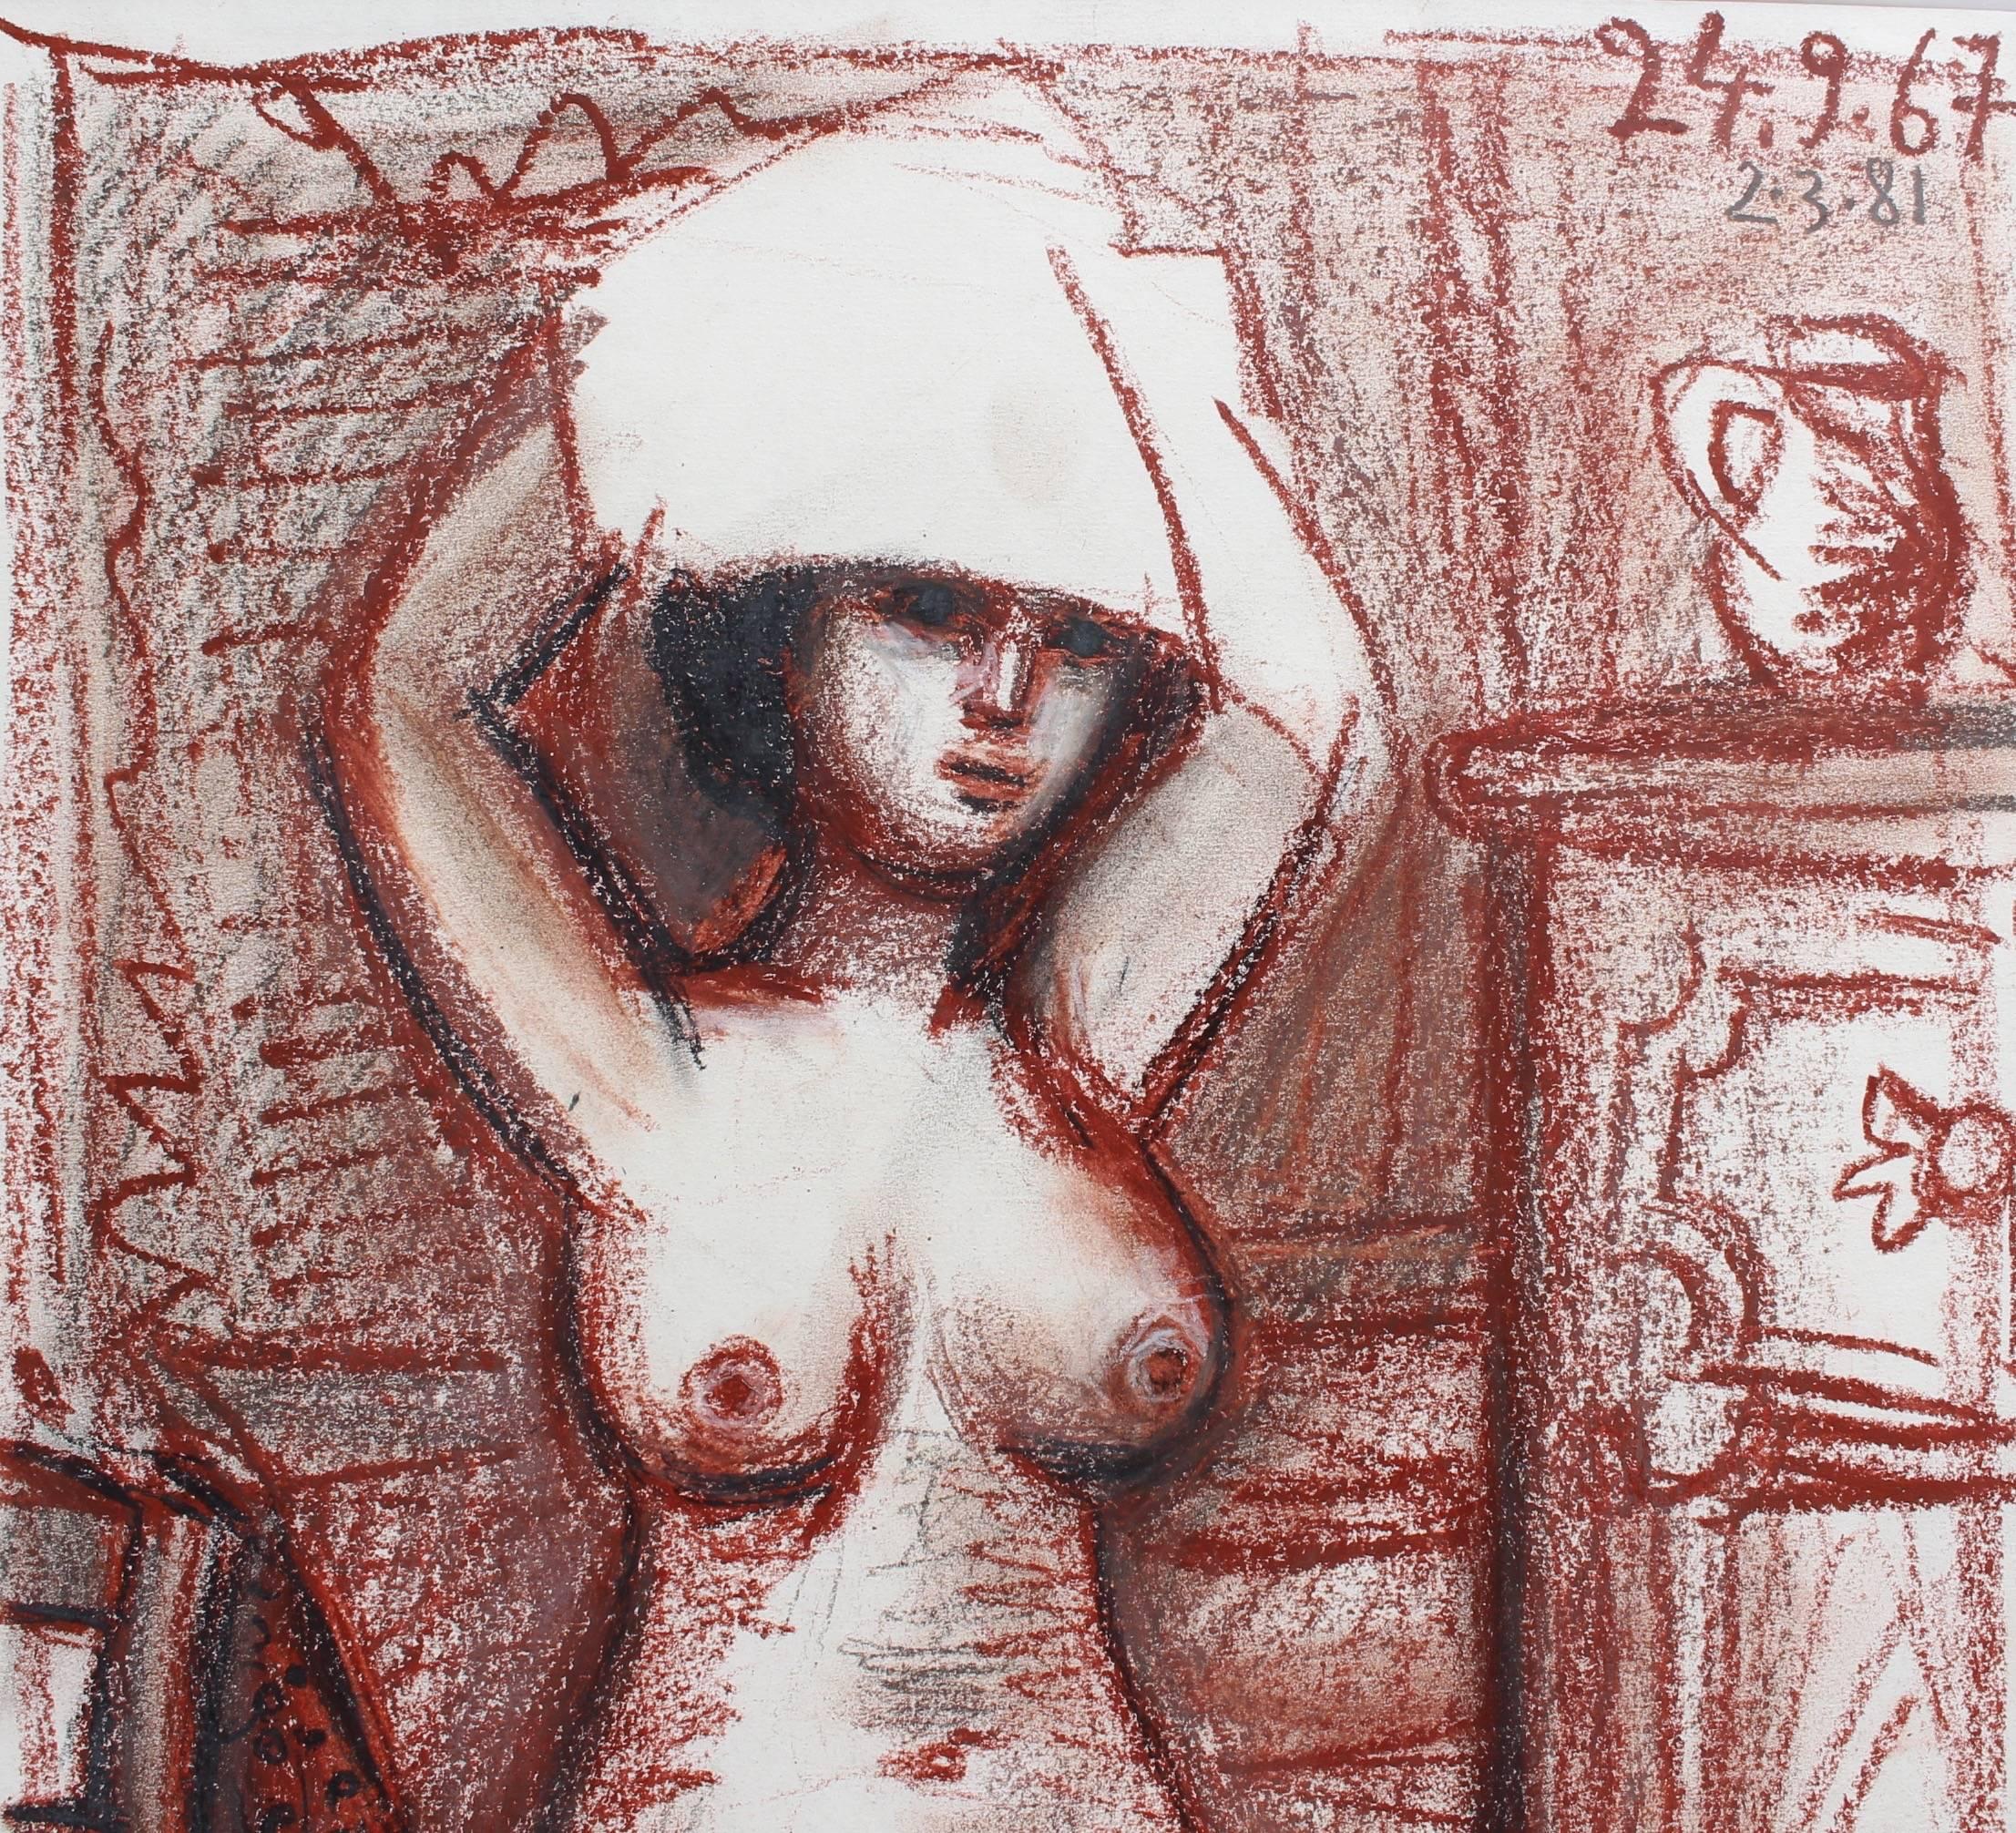 Nudefarbene Frau trocknet ihr Haar (Braun), Nude Painting, von Raymond Debieve